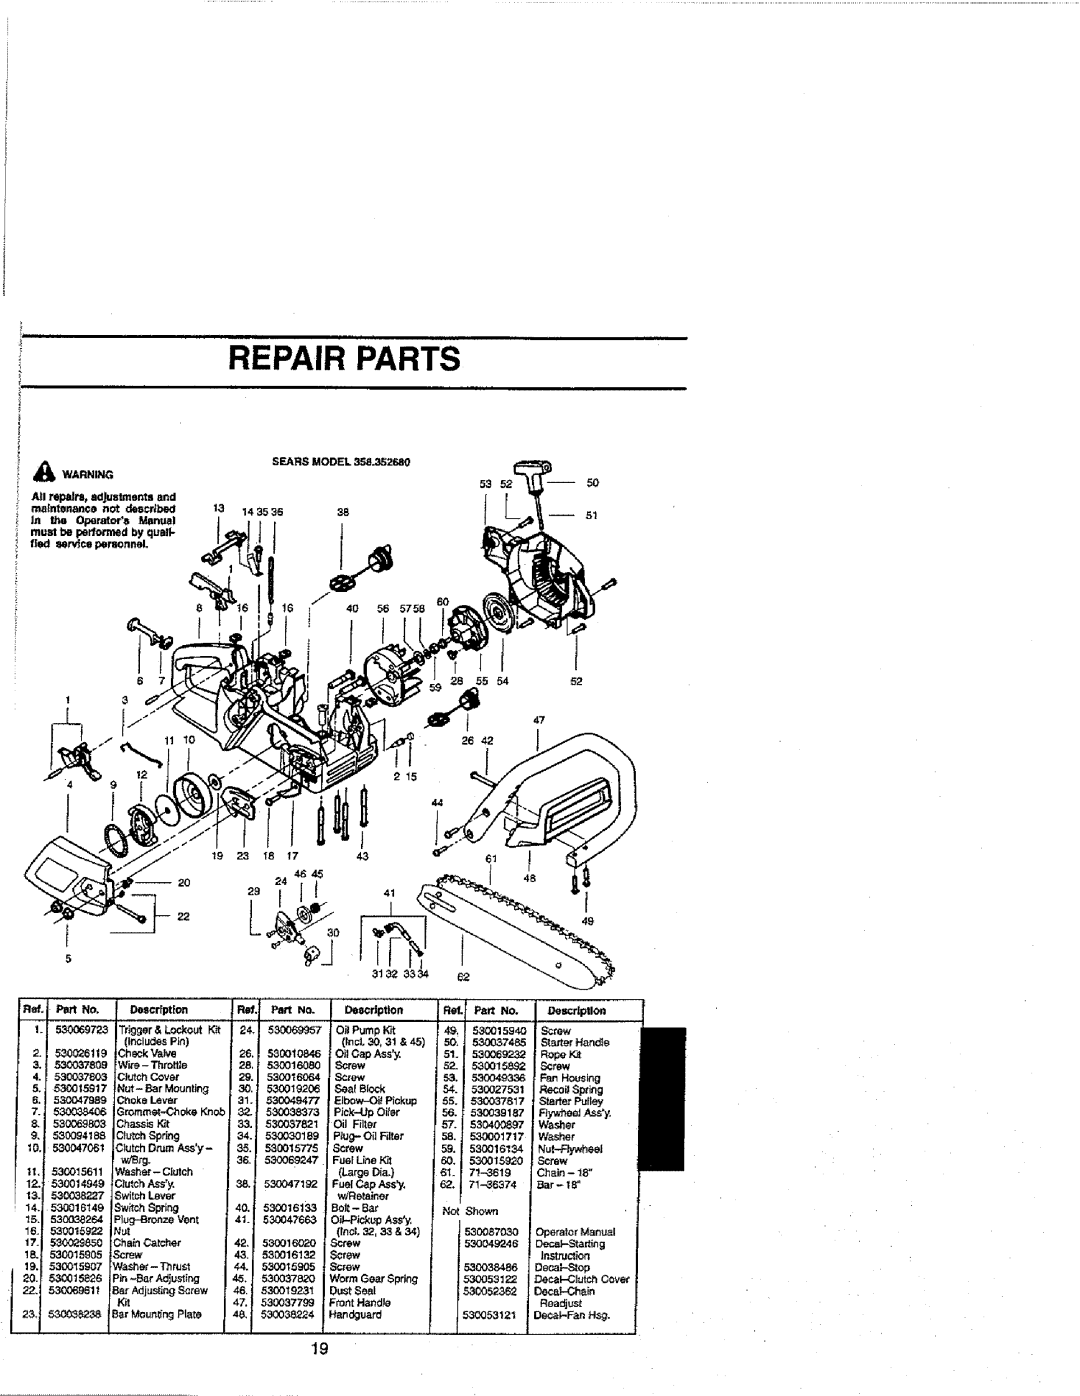 Craftsman 358.352680 - 18 IN. BAR manual Repair Parts, Ass_, 530016020, Screw, 530019231, 530037799, Front HandJe 